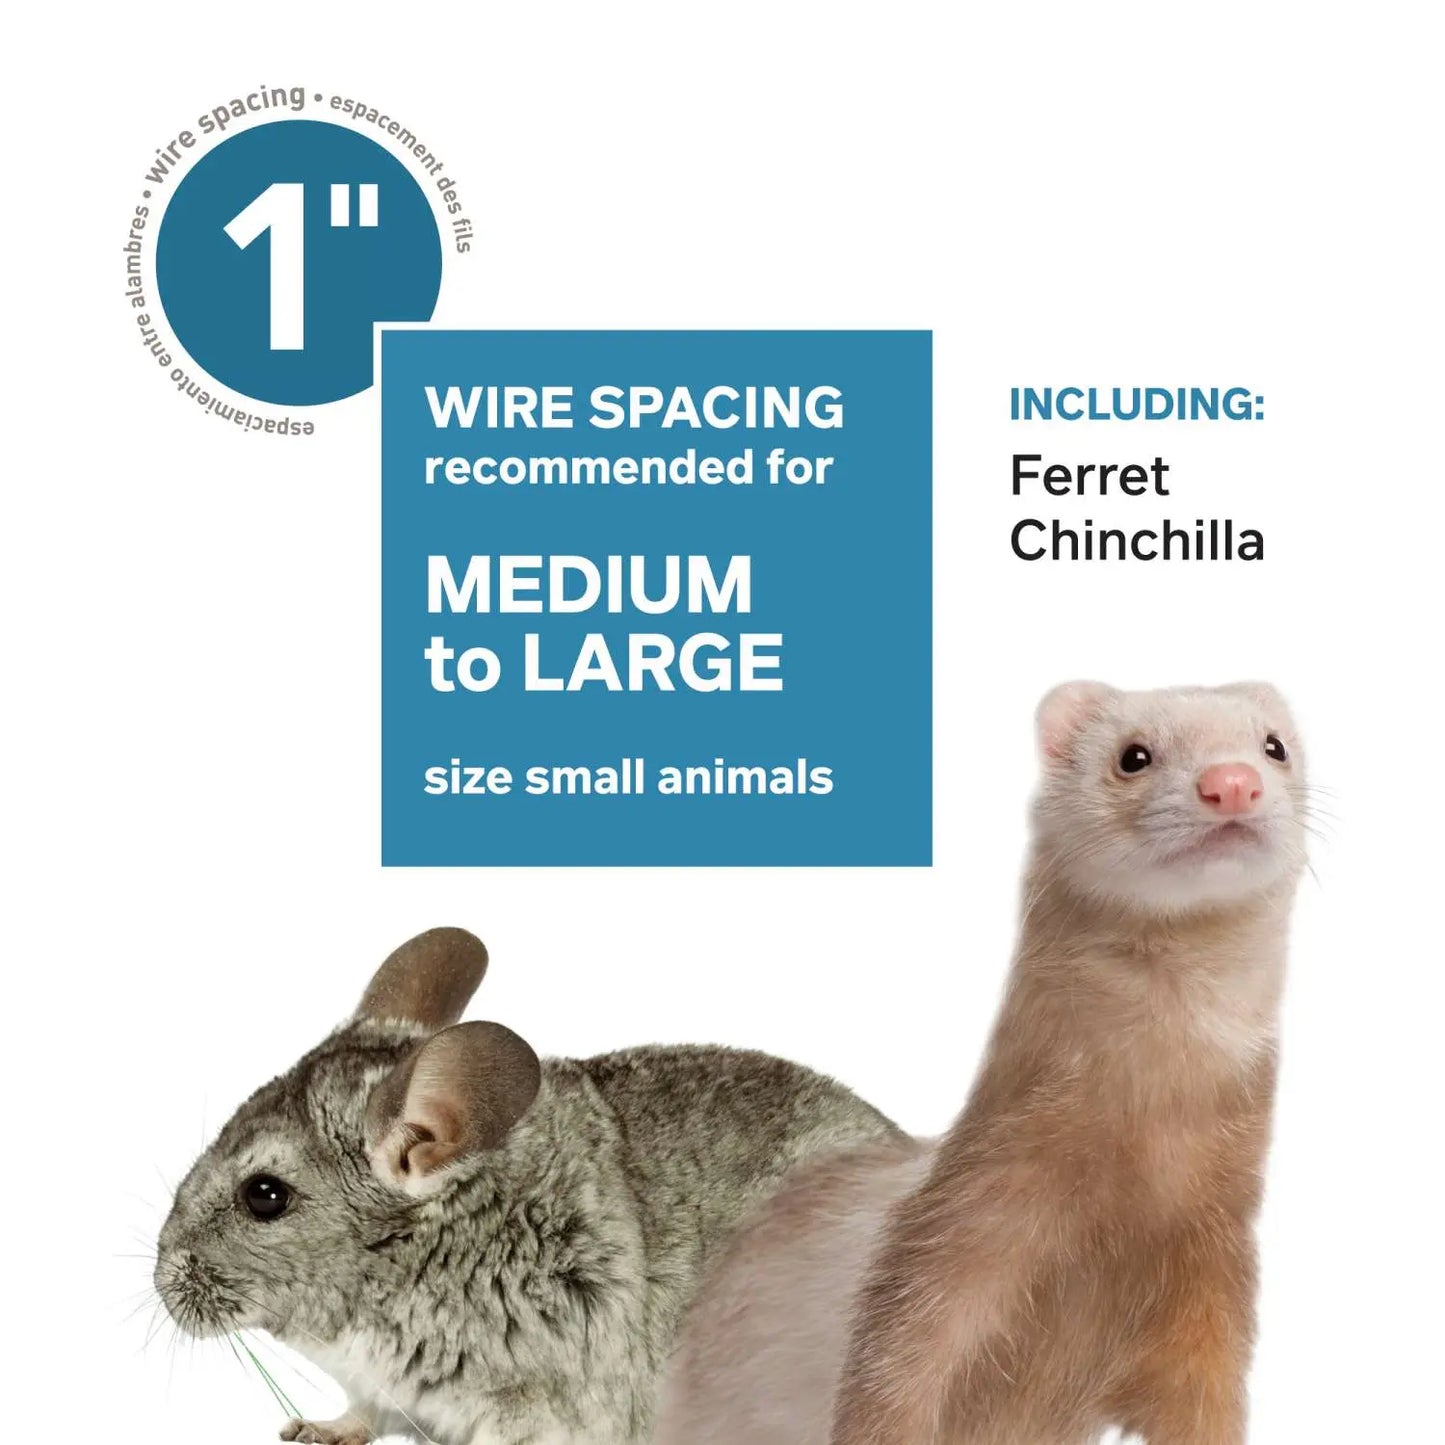 Prevue Pet Products Adult Ferret Home/Travel Cage Blue Base Prevue Pet